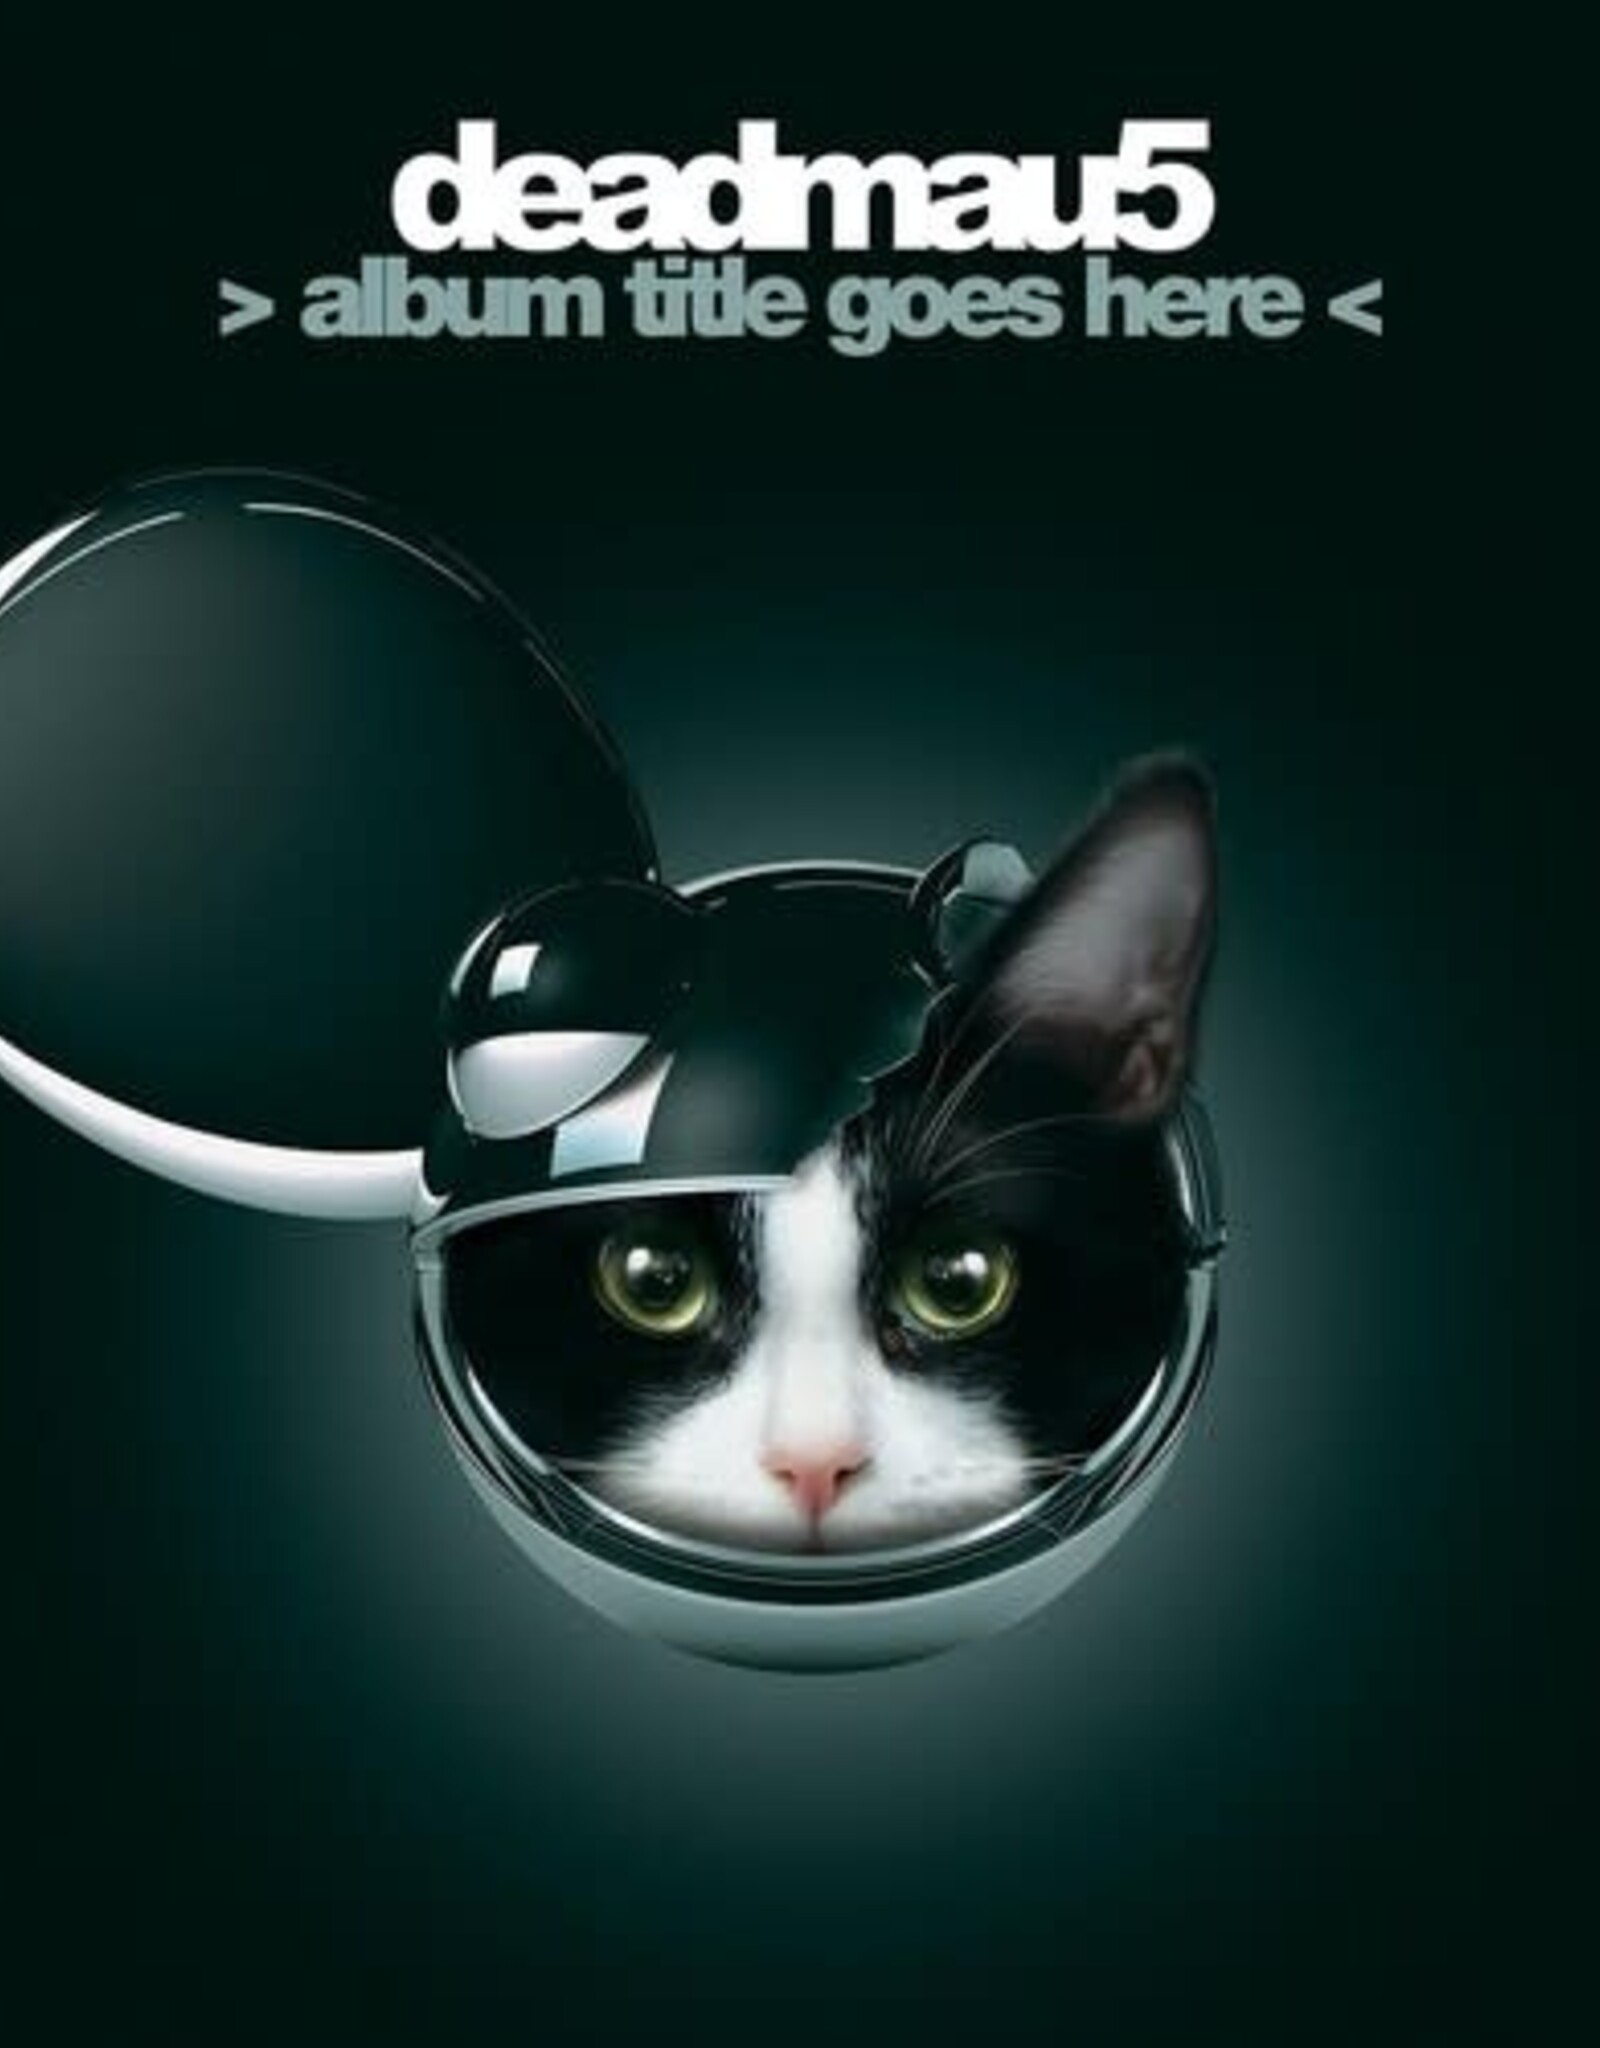 Deadmau5 - Album Title Goes Here (Blue Vinyl)